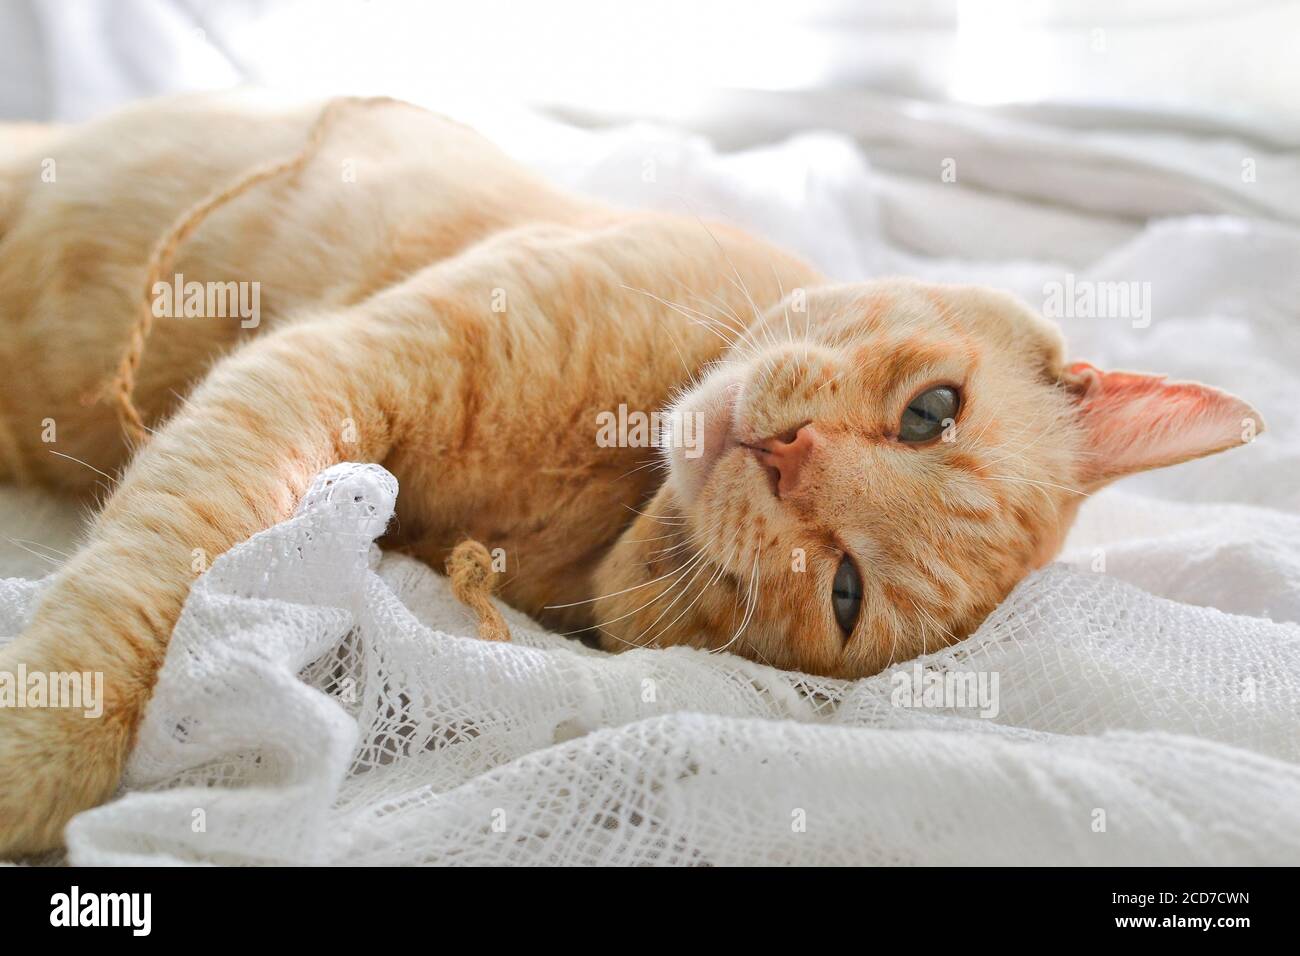 Gato rojo claro en una manta blanca, luz de la ventana. Un lindo gato de jengibre se encuentra bajo una manta blanca en el alféizar de la ventana, en la cama. Foto de stock